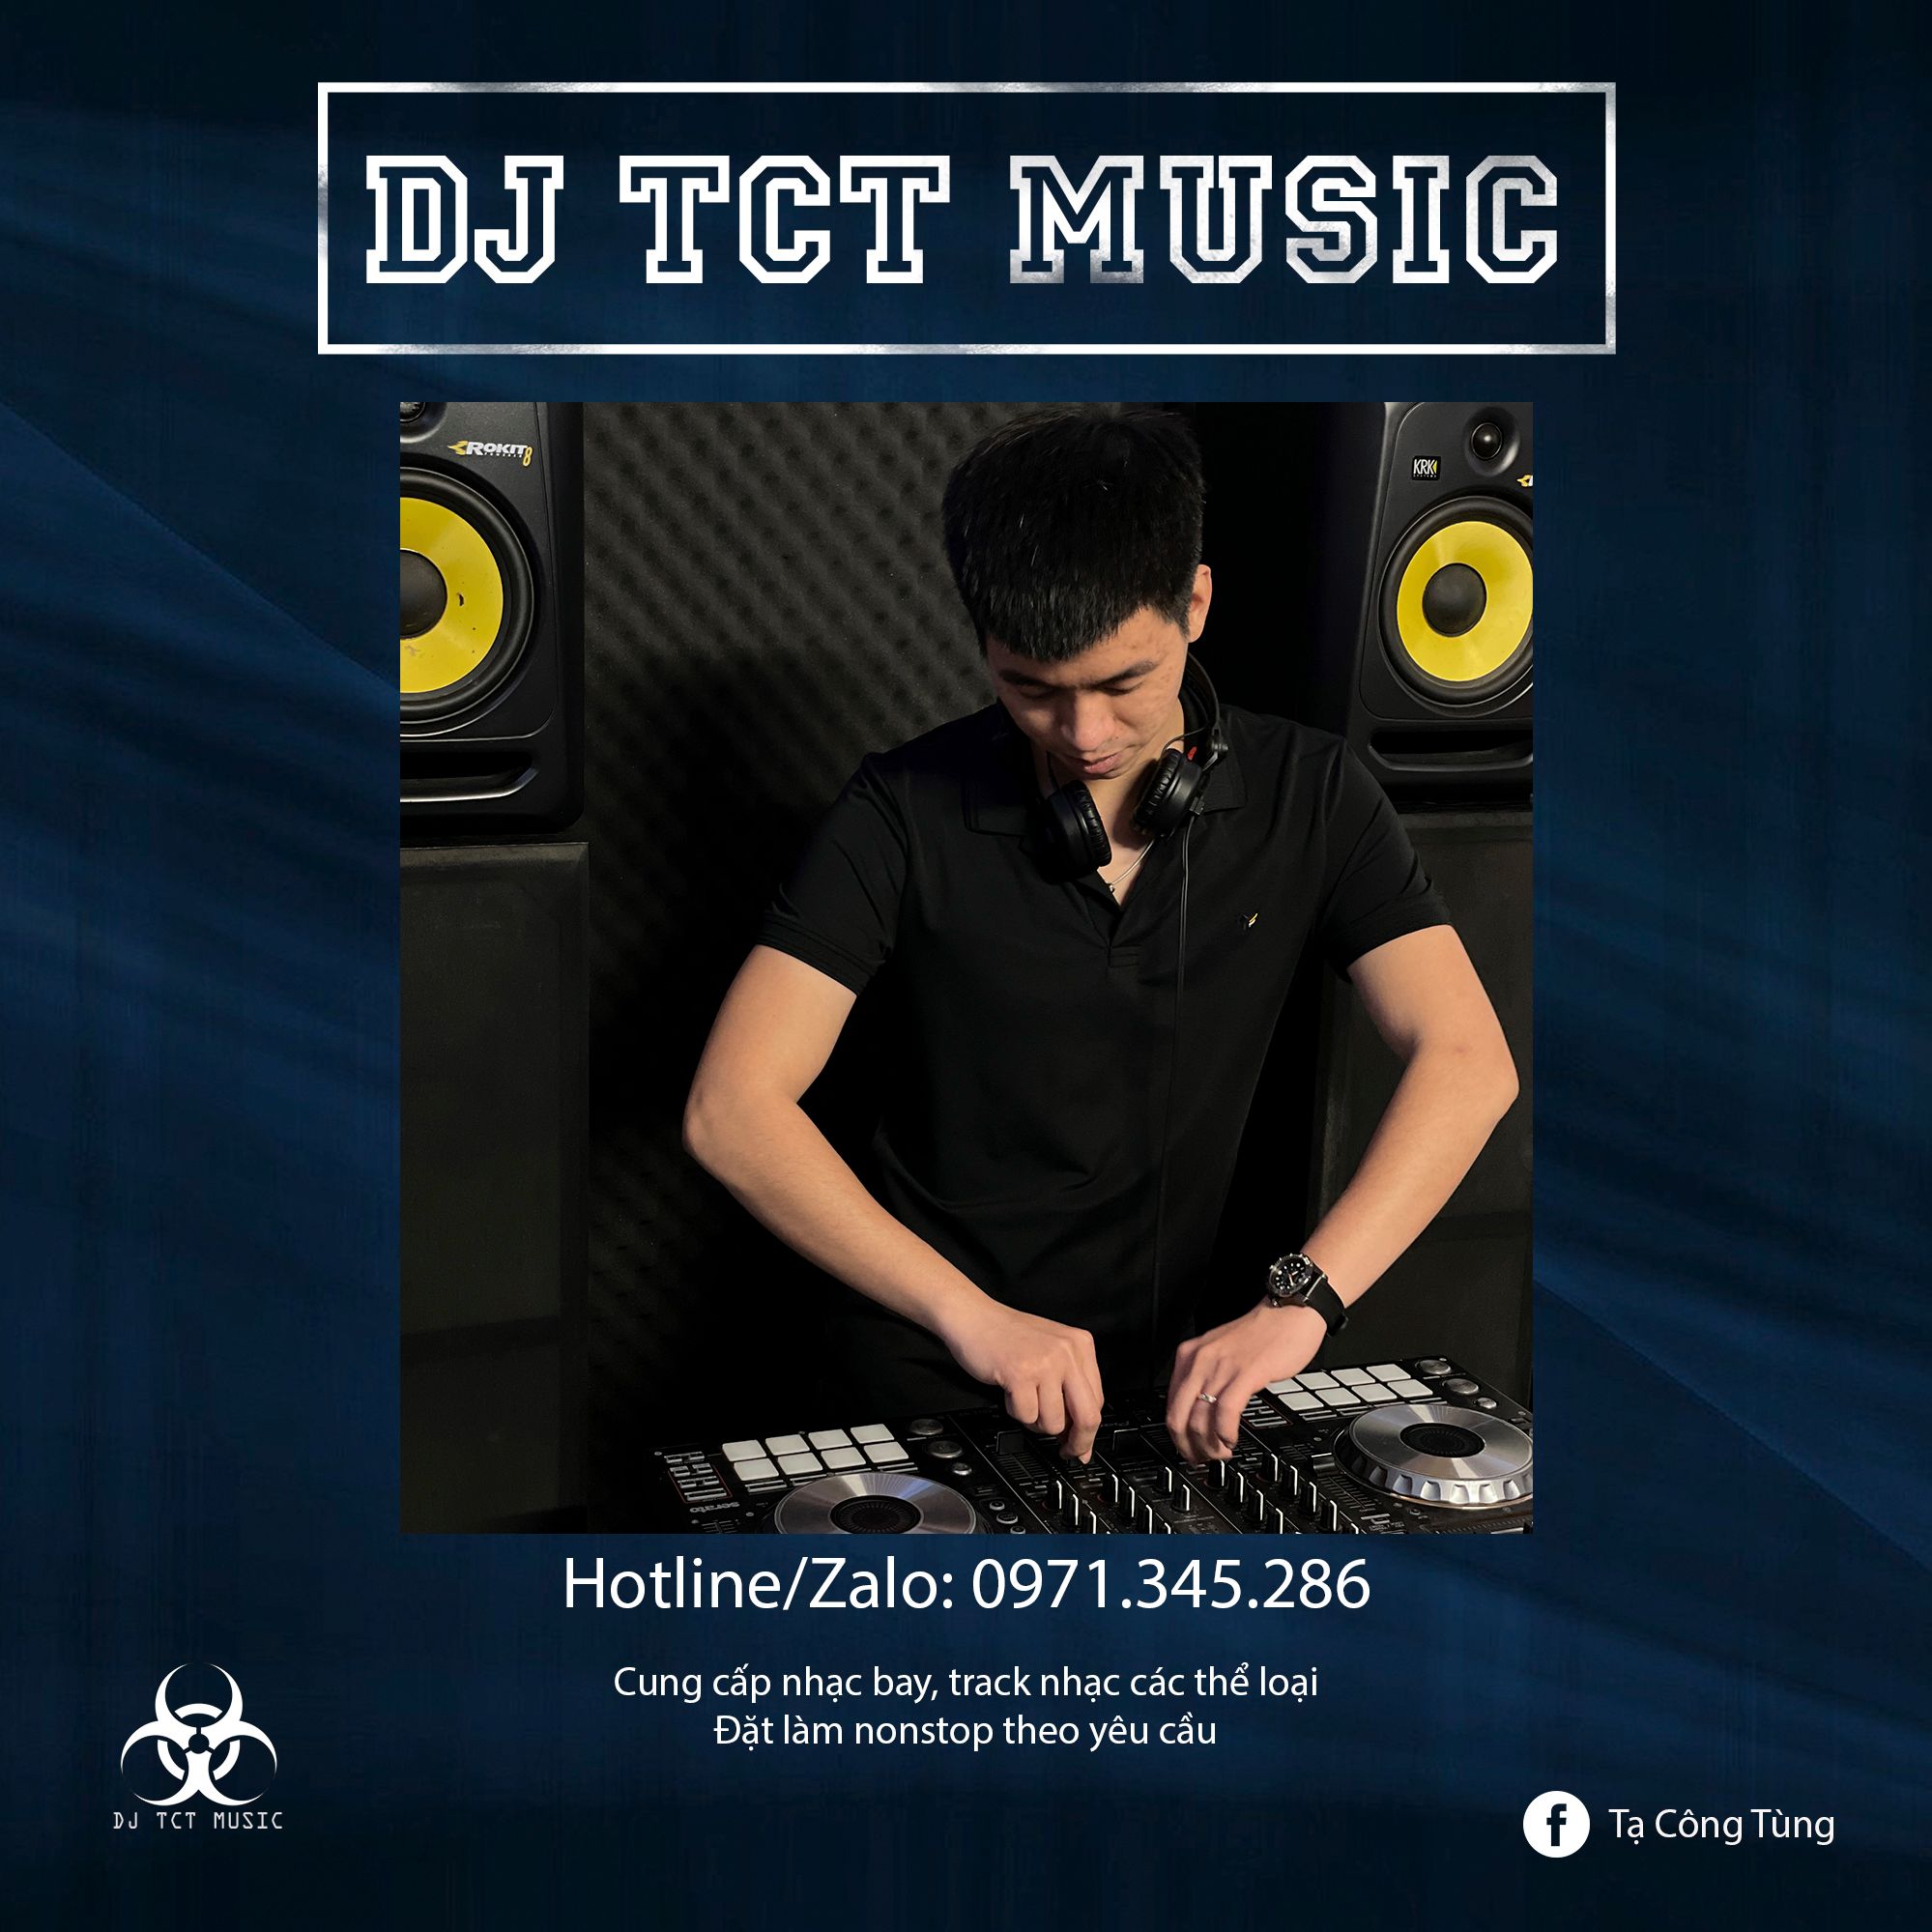 Descarca HÀNG TRÔI KE 2022 _ DJ TCT MUSIC 0971345286 _ NONSTOP BAY PHÒNG GIỌT NƯỚC CHẢY DỊU ÊM